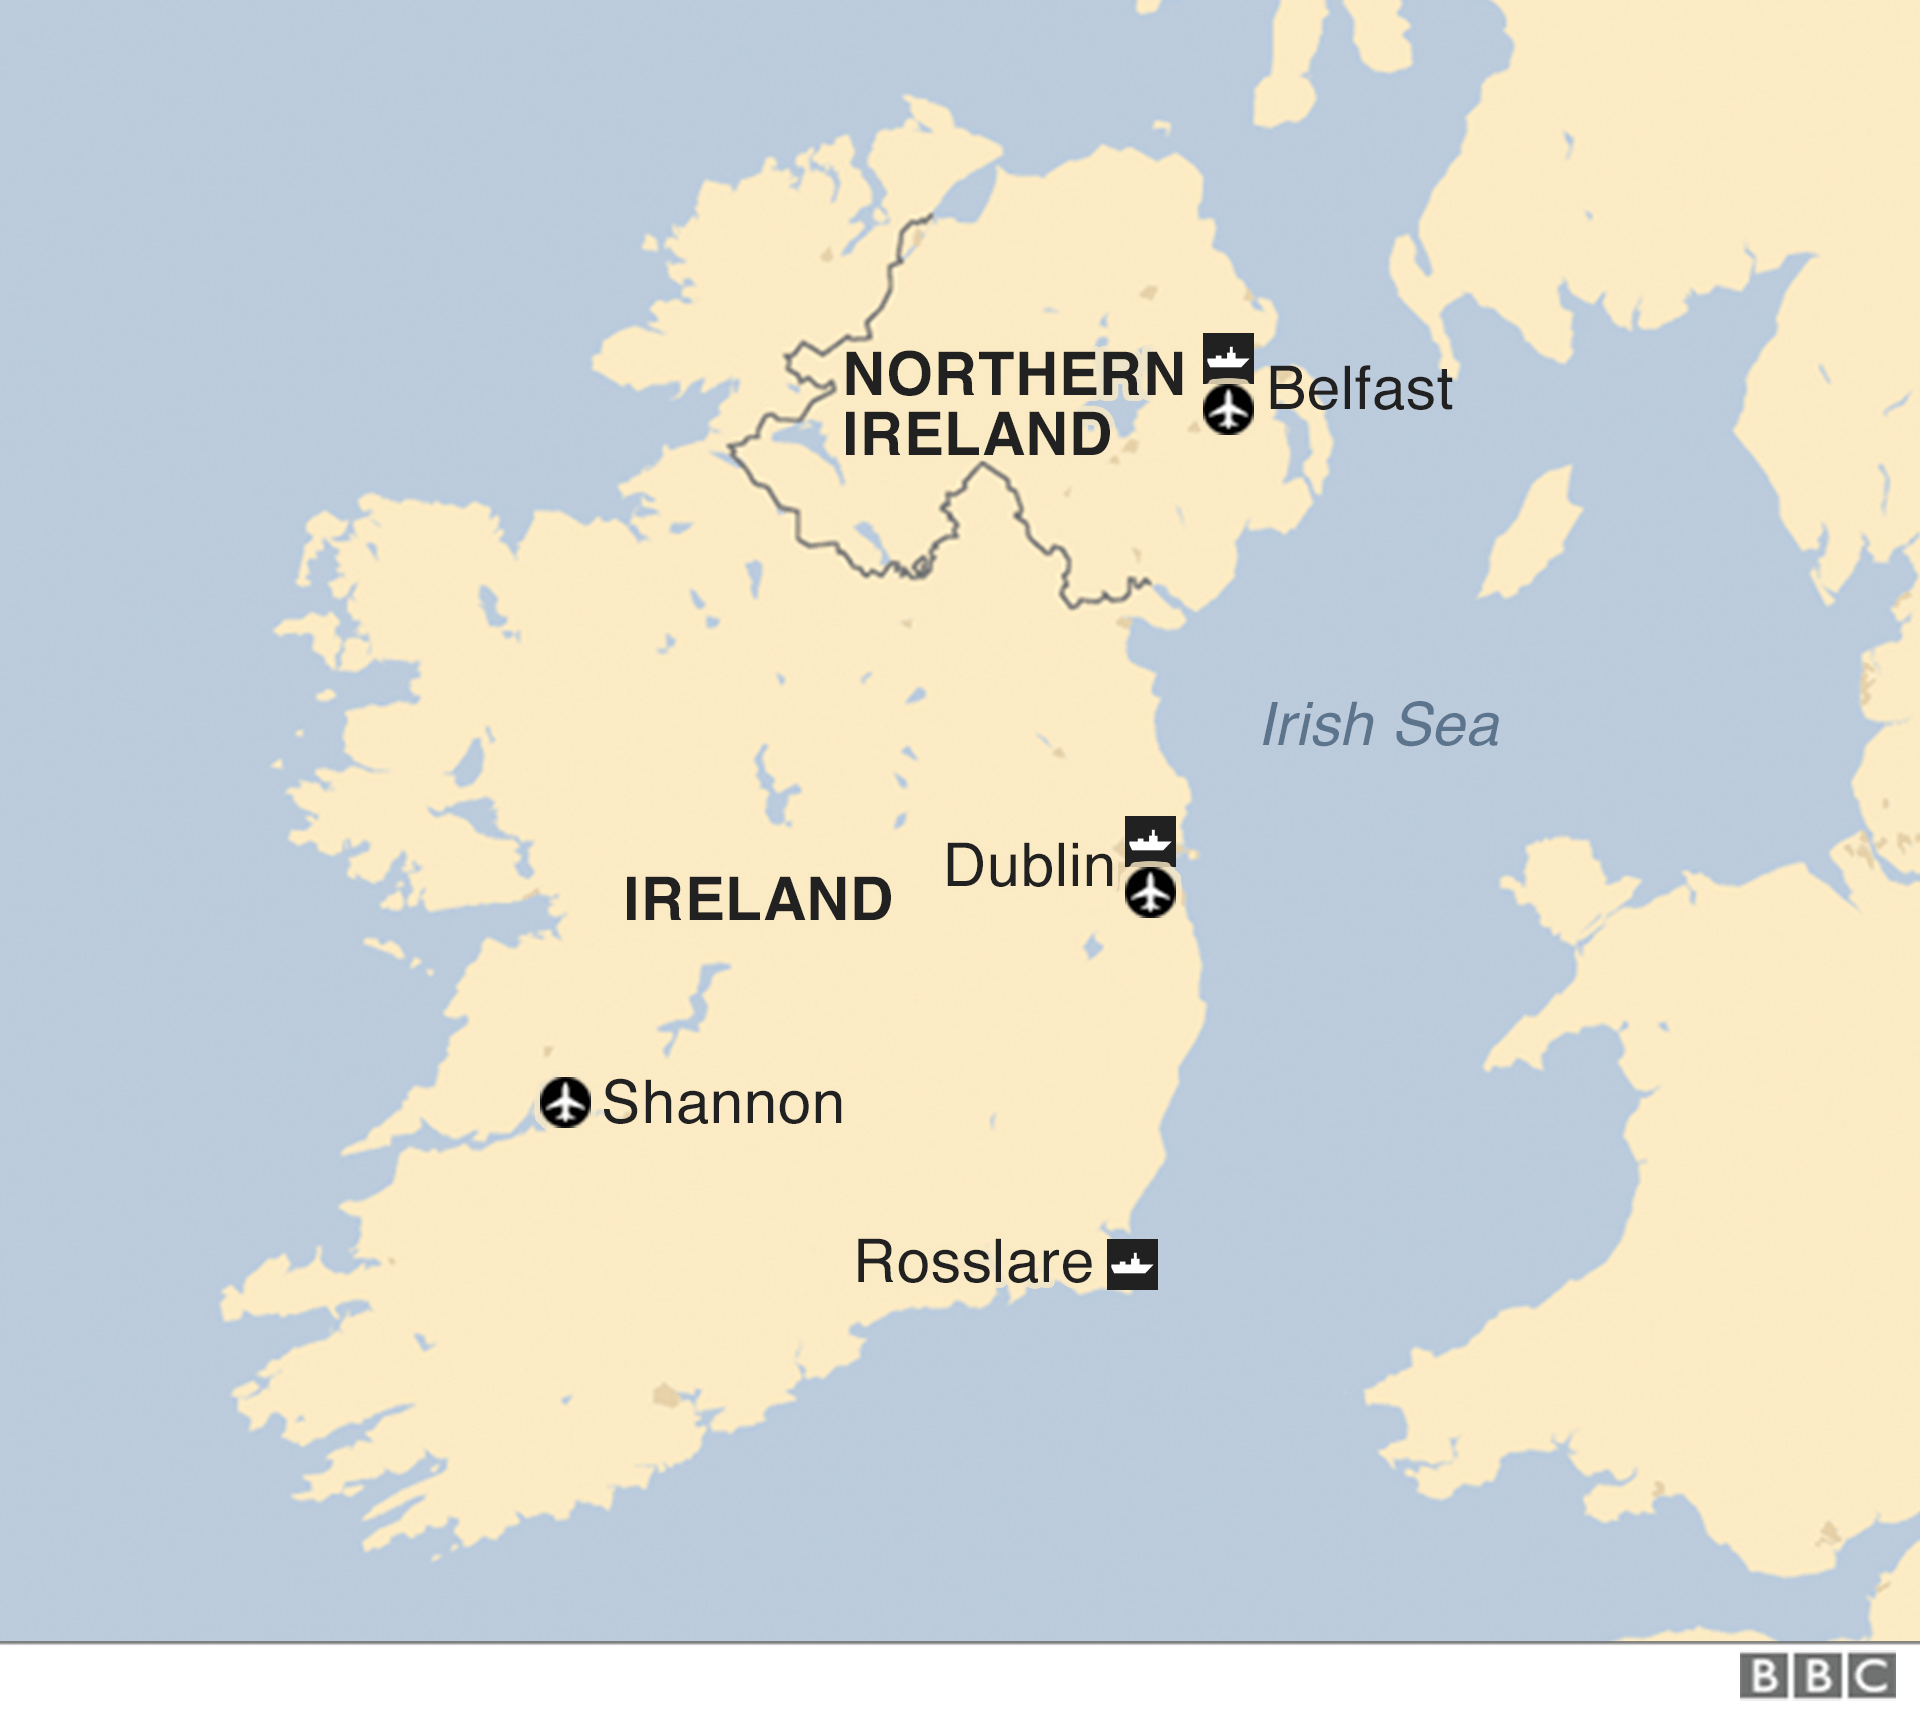 Карта Северной Ирландии и Ирландской Республики